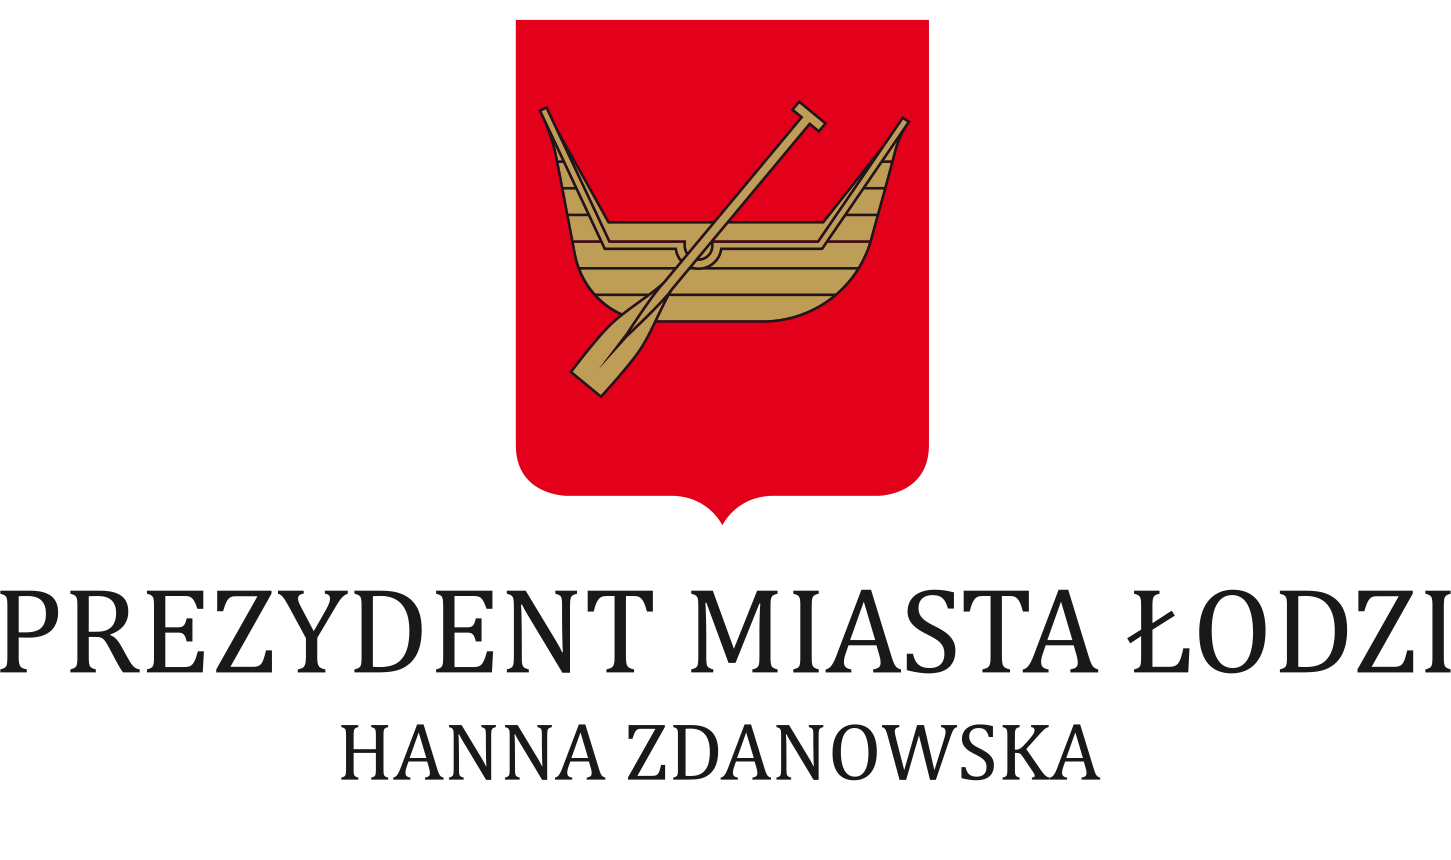 Prezydent Miasta Łodzi Hanna Zdanowska